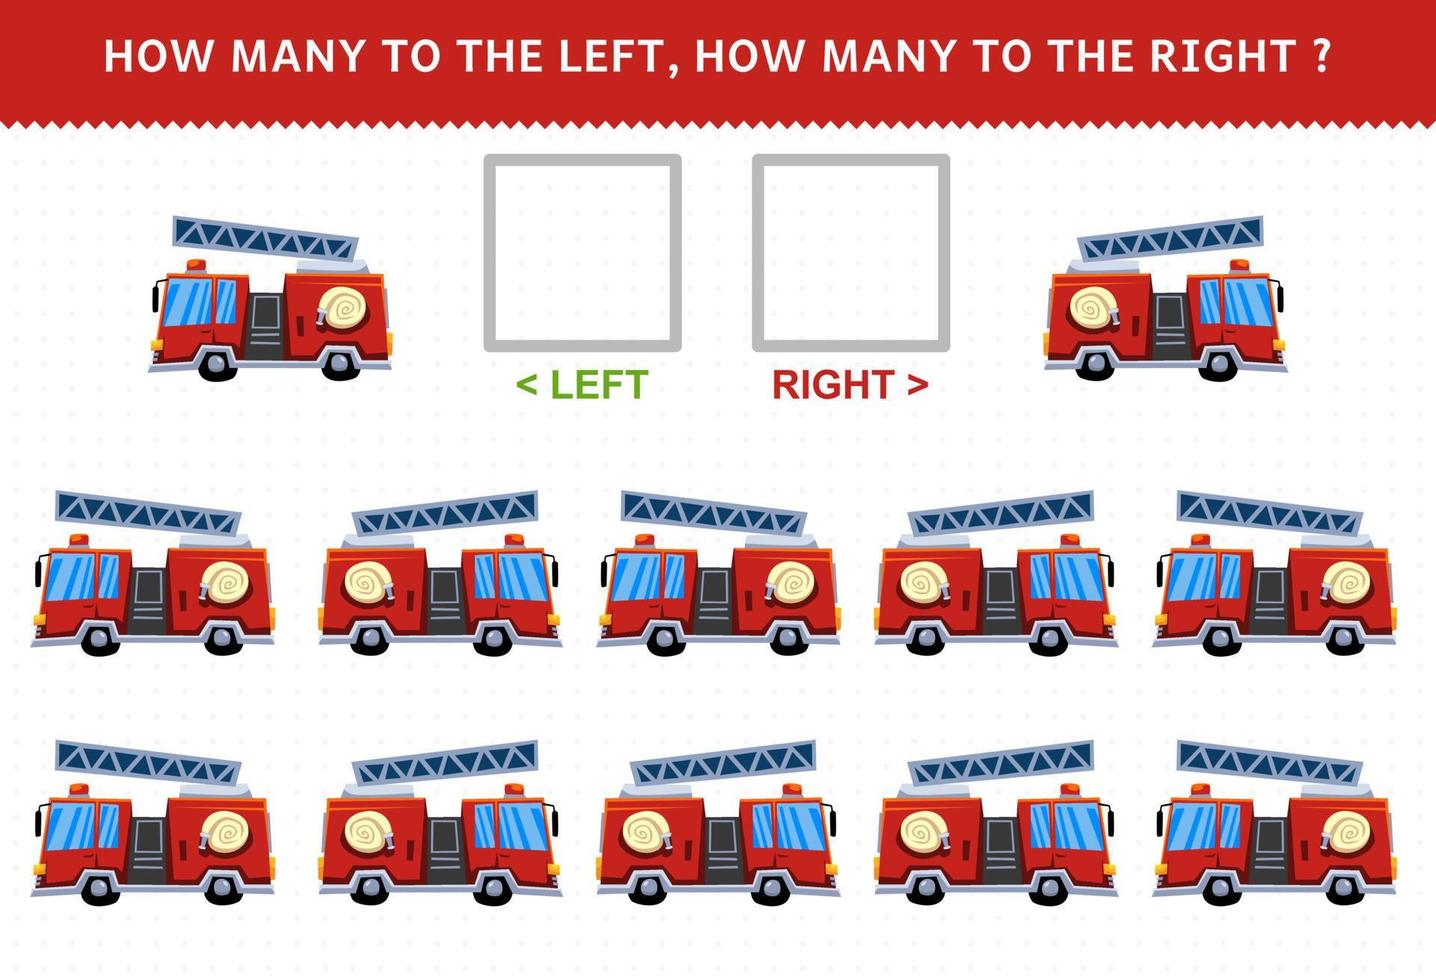 gioco educativo per bambini di contare l'immagine sinistra e destra con un simpatico cartone animato camion dei pompieri vettore